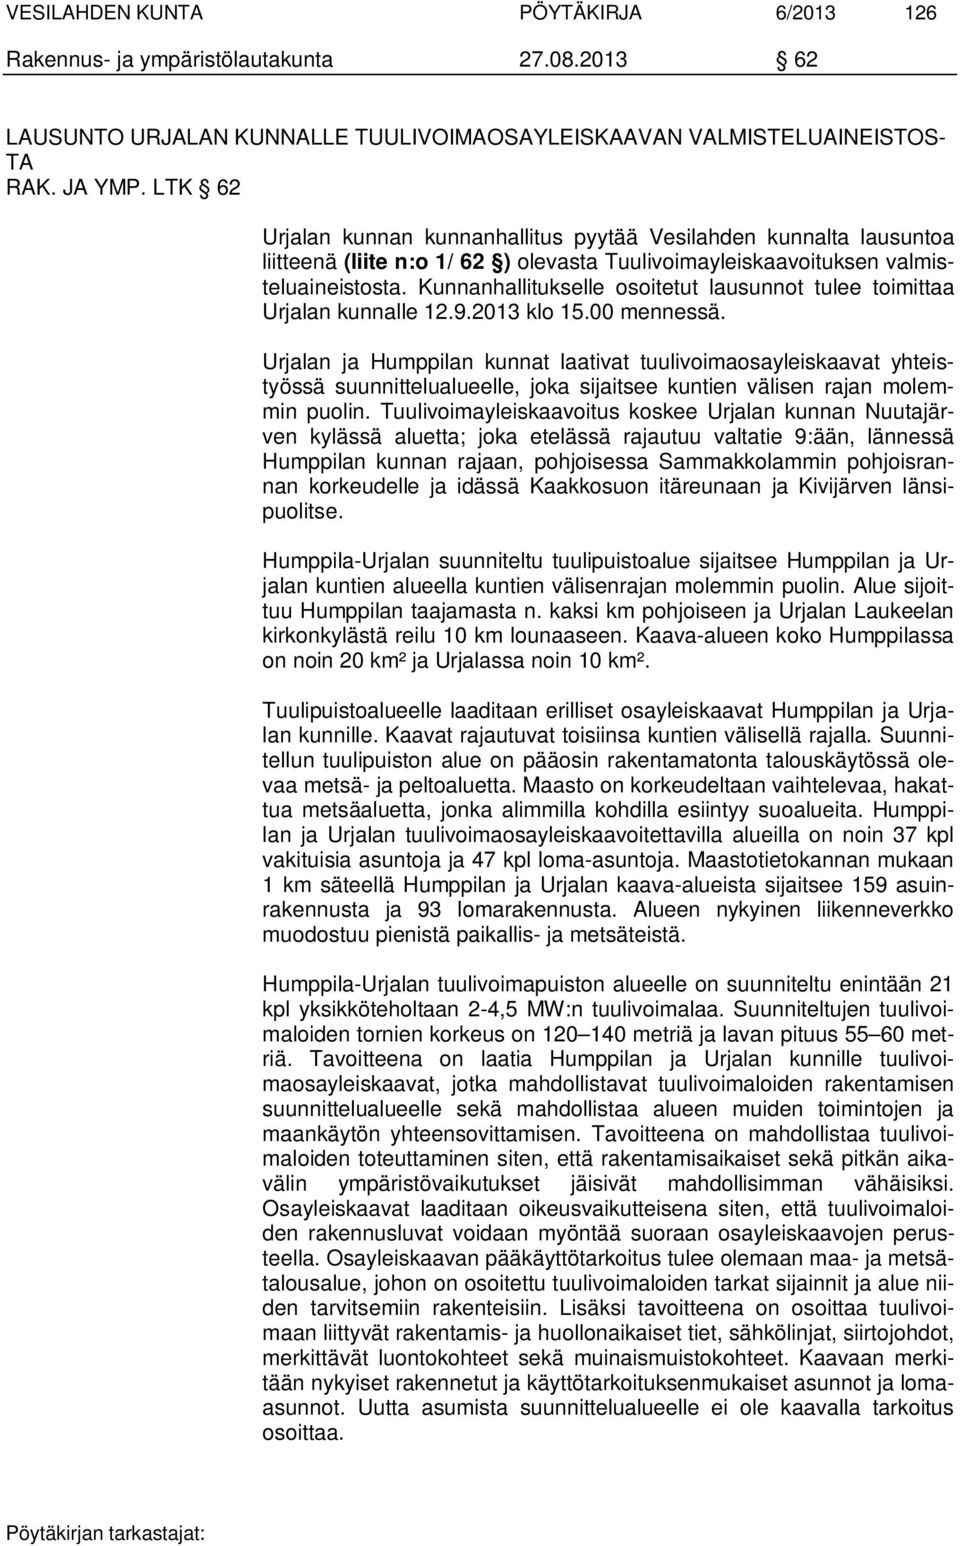 Kunnanhallitukselle osoitetut lausunnot tulee toimittaa Urjalan kunnalle 12.9.2013 klo 15.00 mennessä.